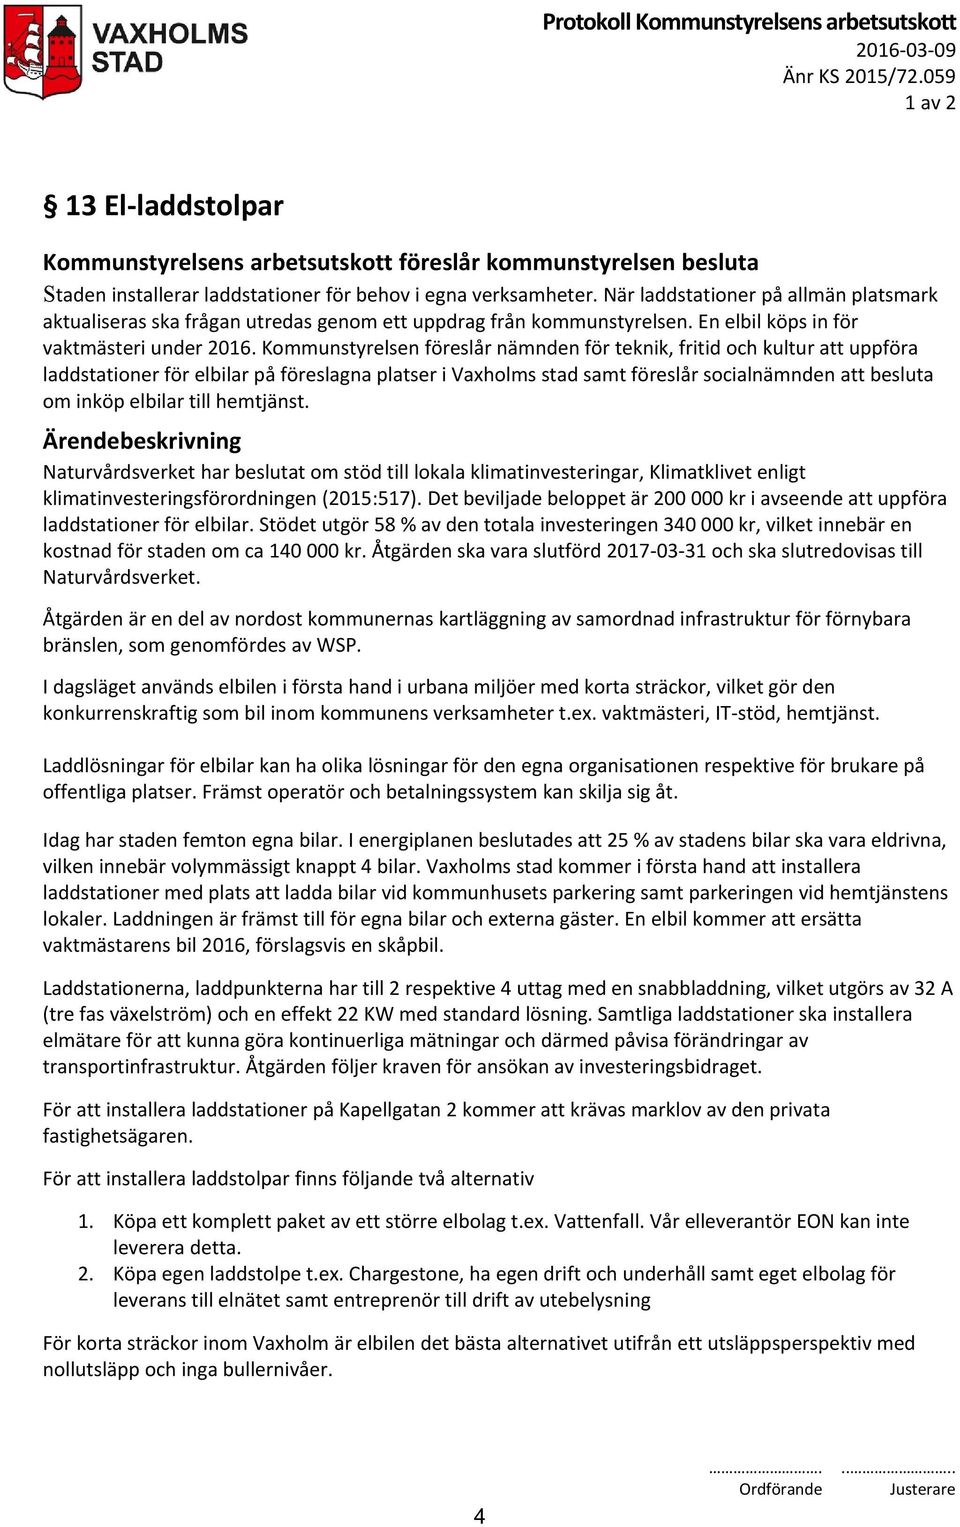 Kommunstyrelsen föreslår nämnden för teknik, fritid och kultur att uppföra laddstationer för elbilar på föreslagna platser i Vaxholms stad samt föreslår socialnämnden att besluta om inköp elbilar